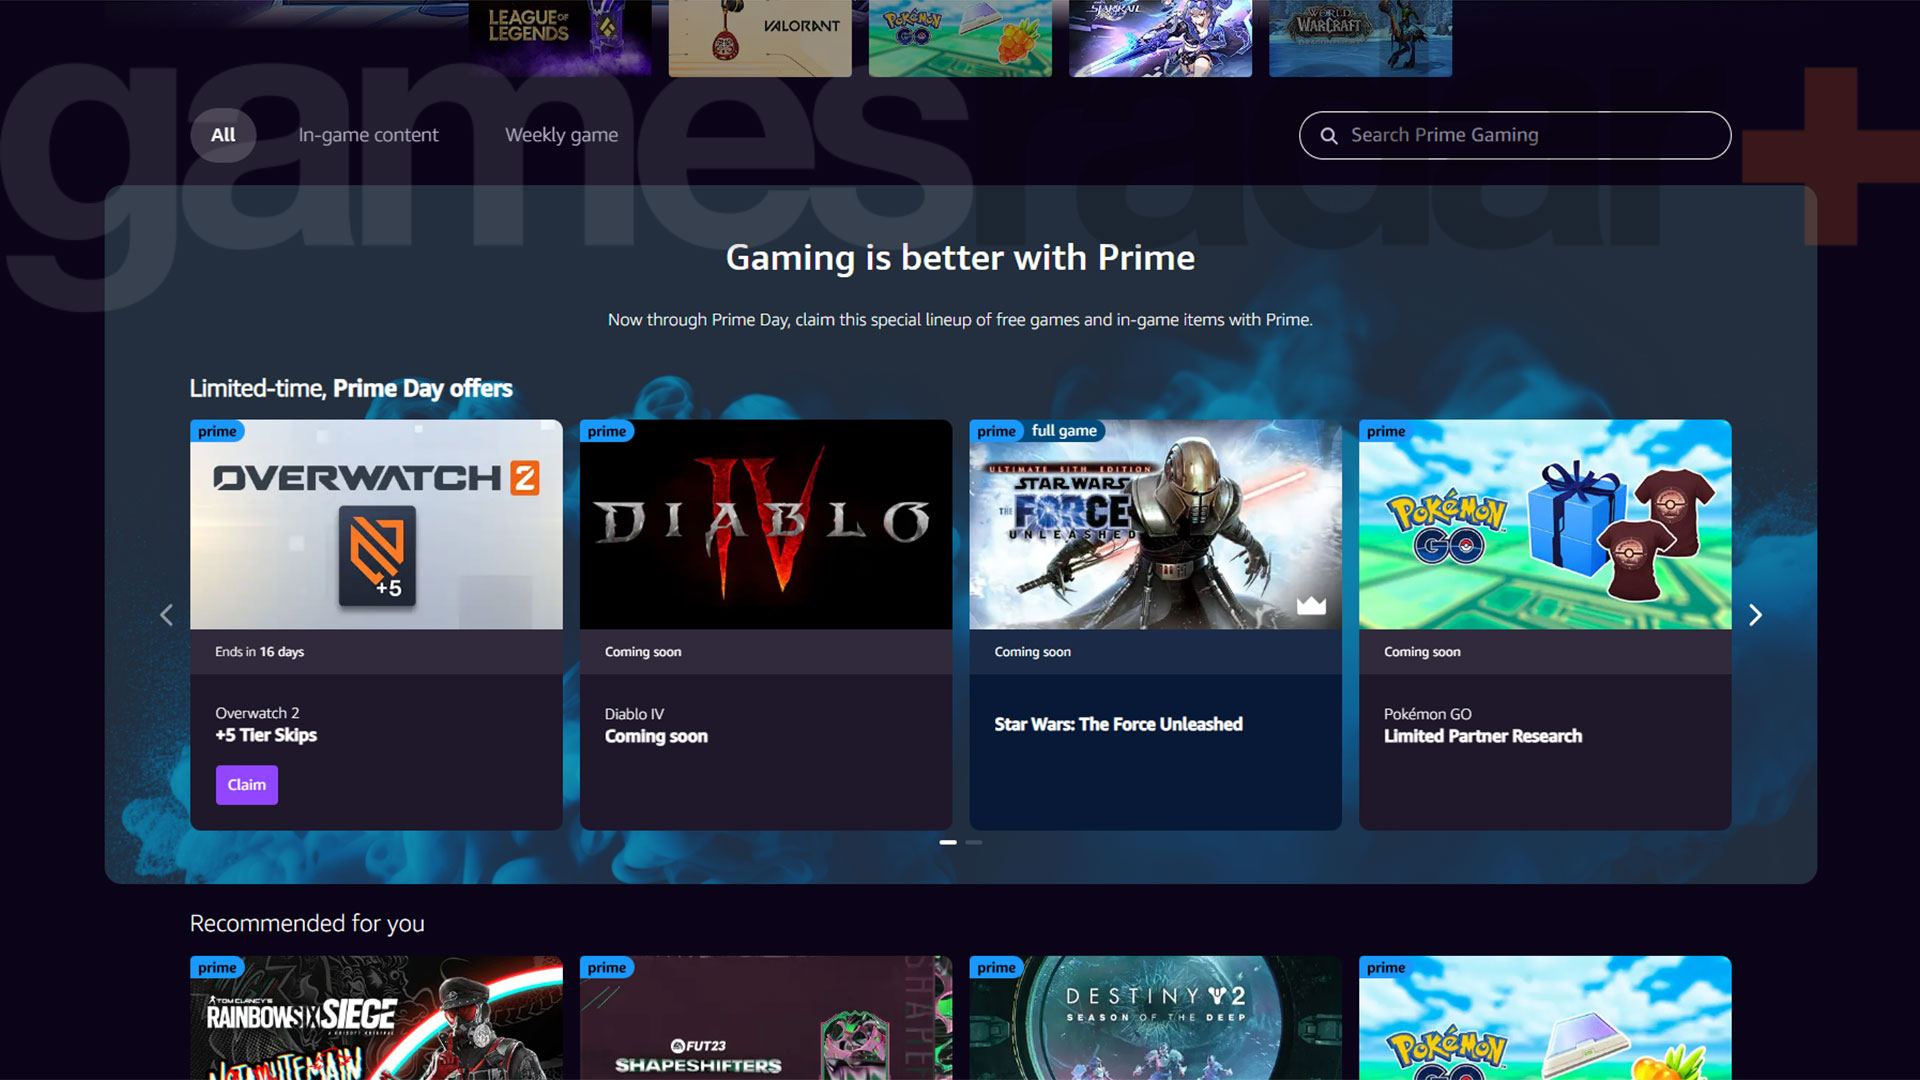 Domovská stránka Prime Gaming, na které jsou odměny za hru Diablo 4 uvedeny jako Coming soon.